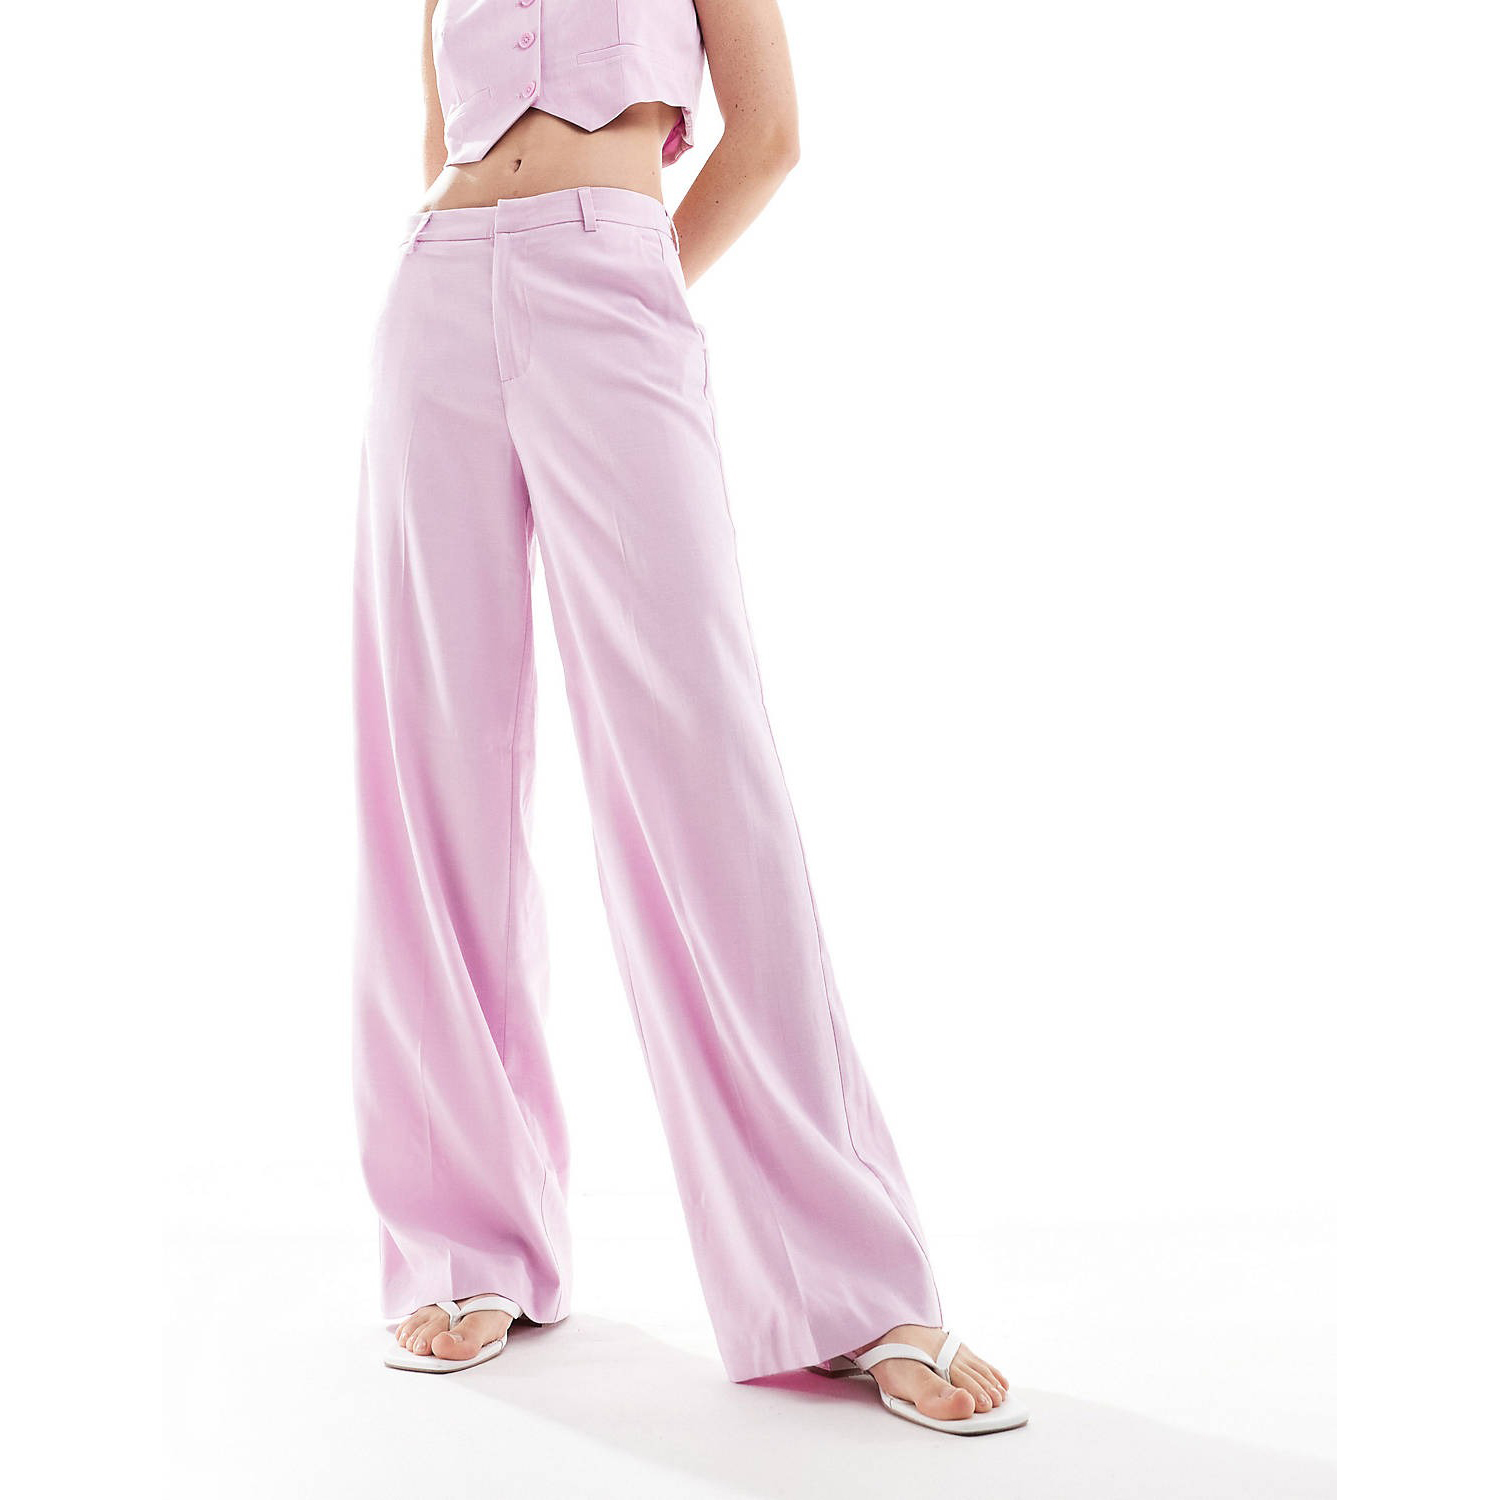 Брюки Only High Waisted Wide Leg, светло-розовый брюки женские прямые с завышенной талией базовые цветные непрозрачные драпированные повседневные белые брюки с широкими штанинами подхо